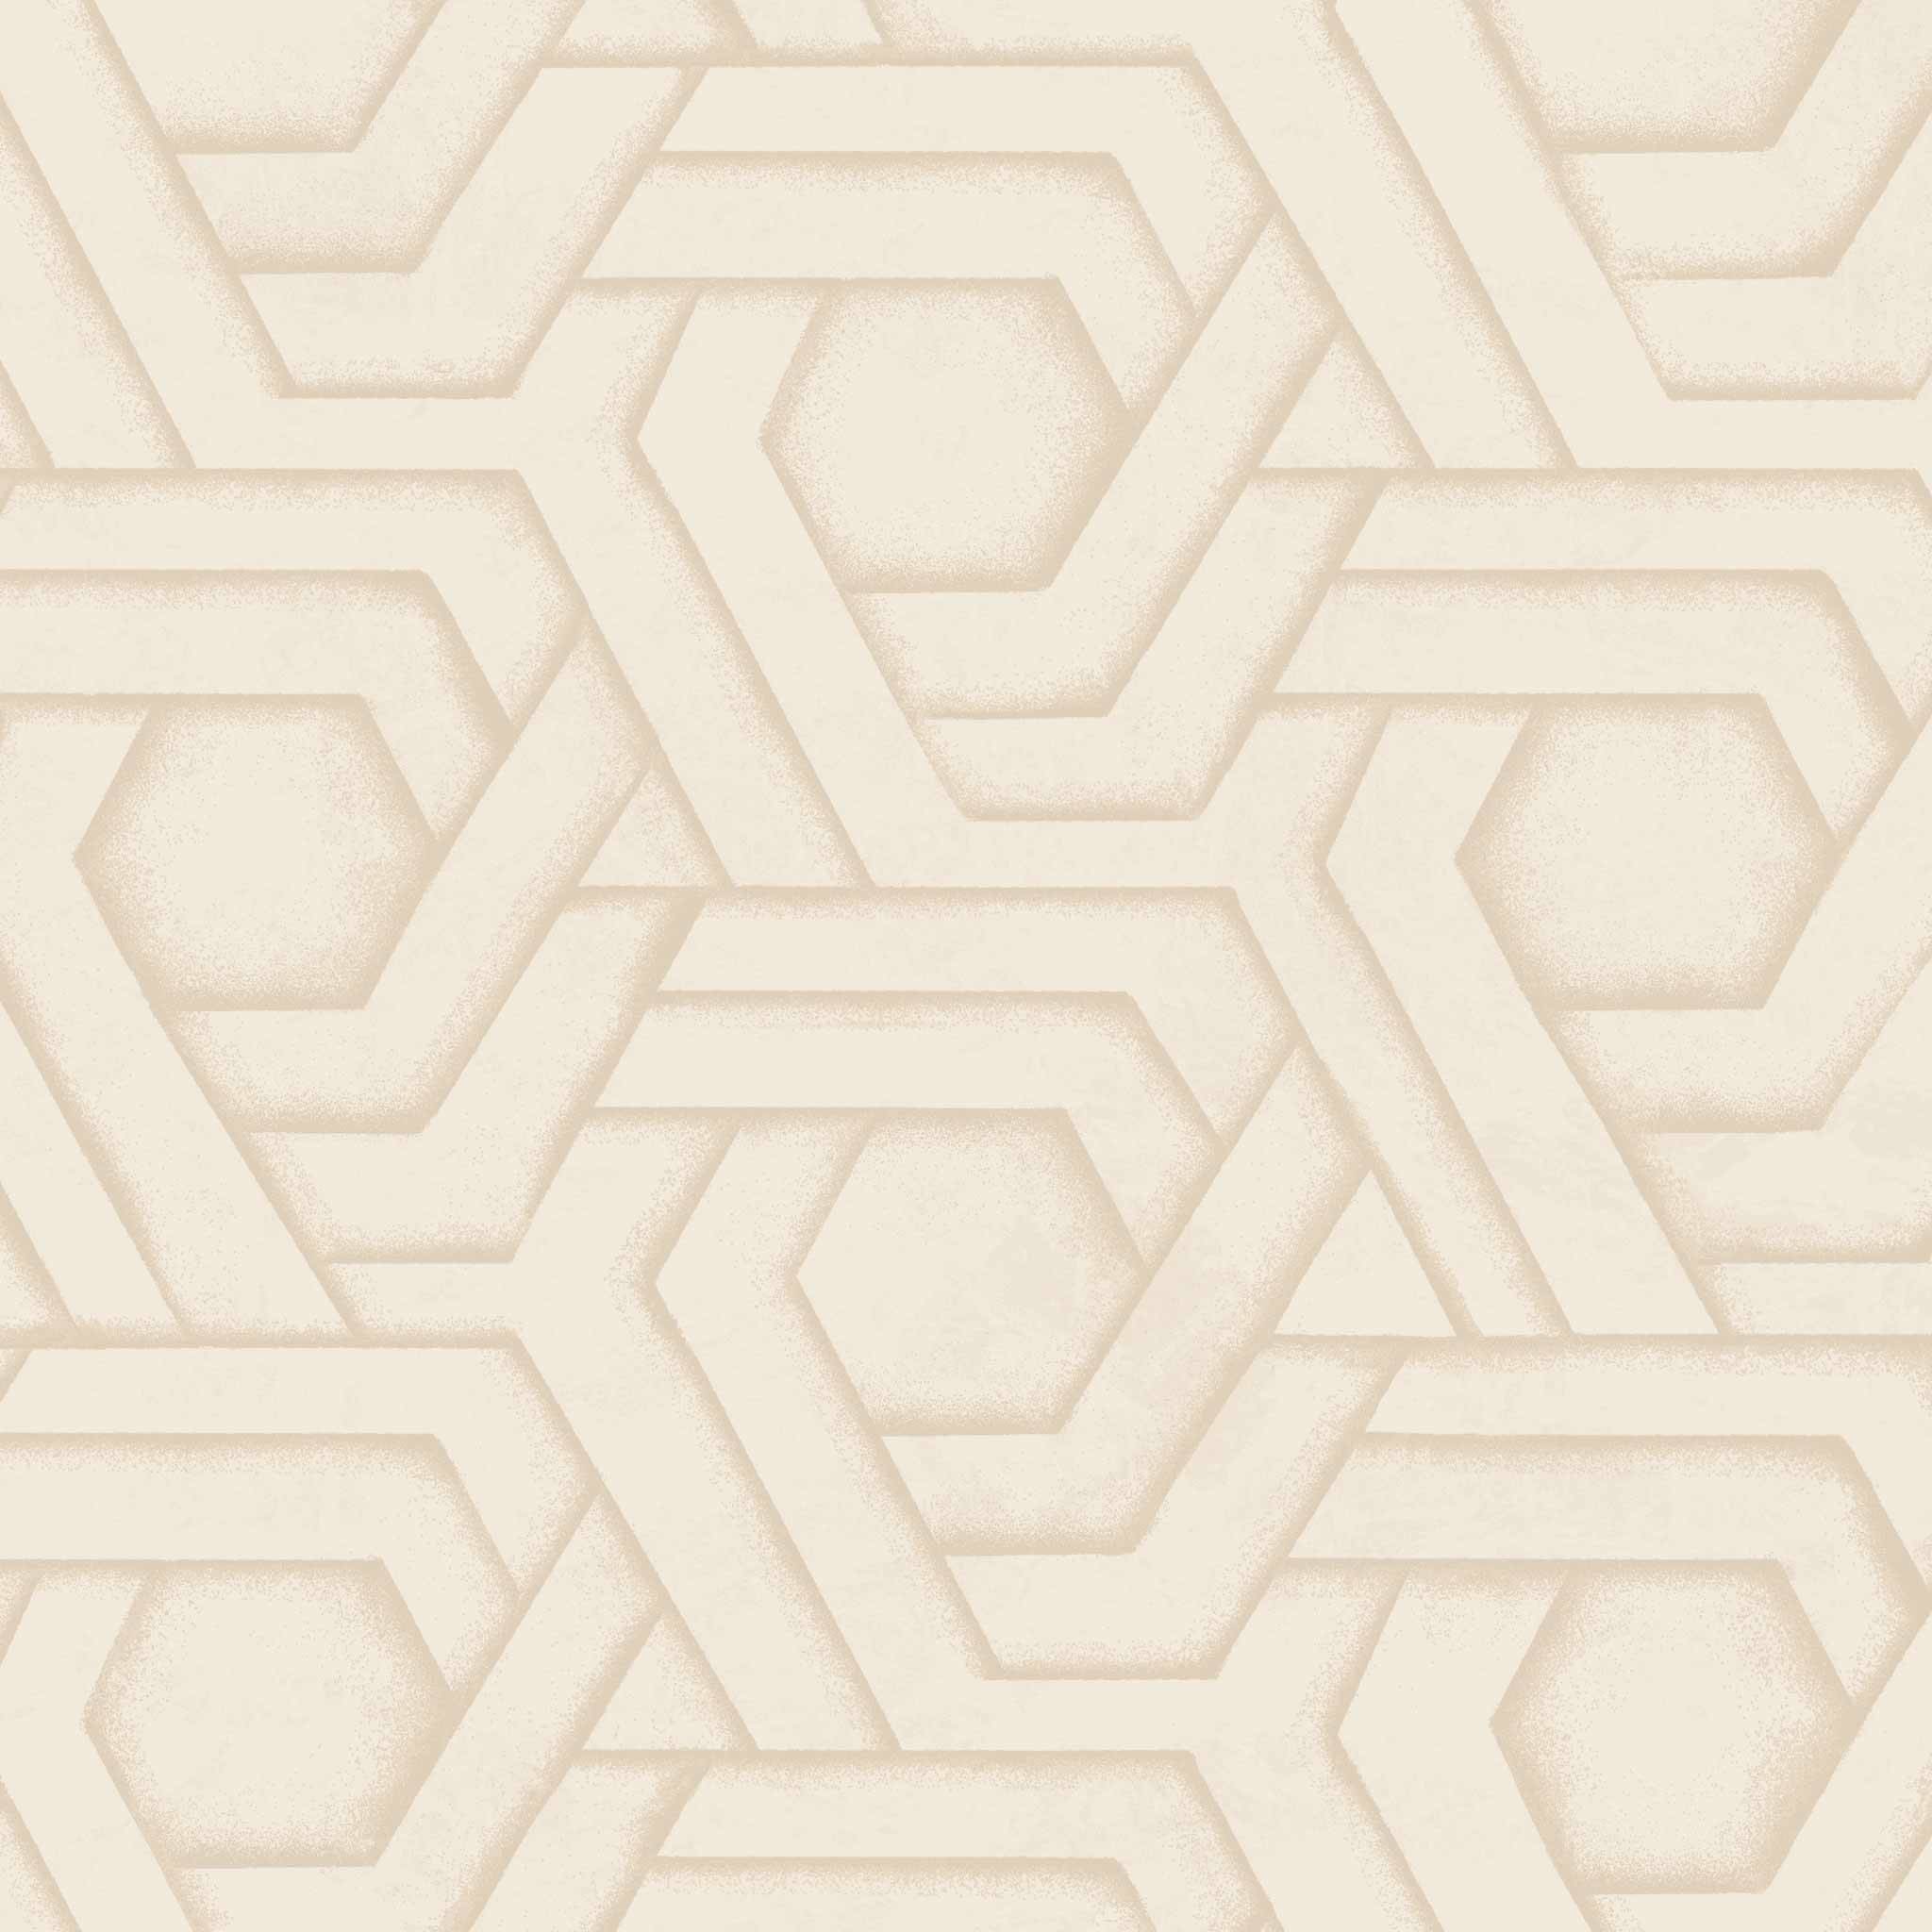 Habita wallpaper design -  Hix pattern in Natural